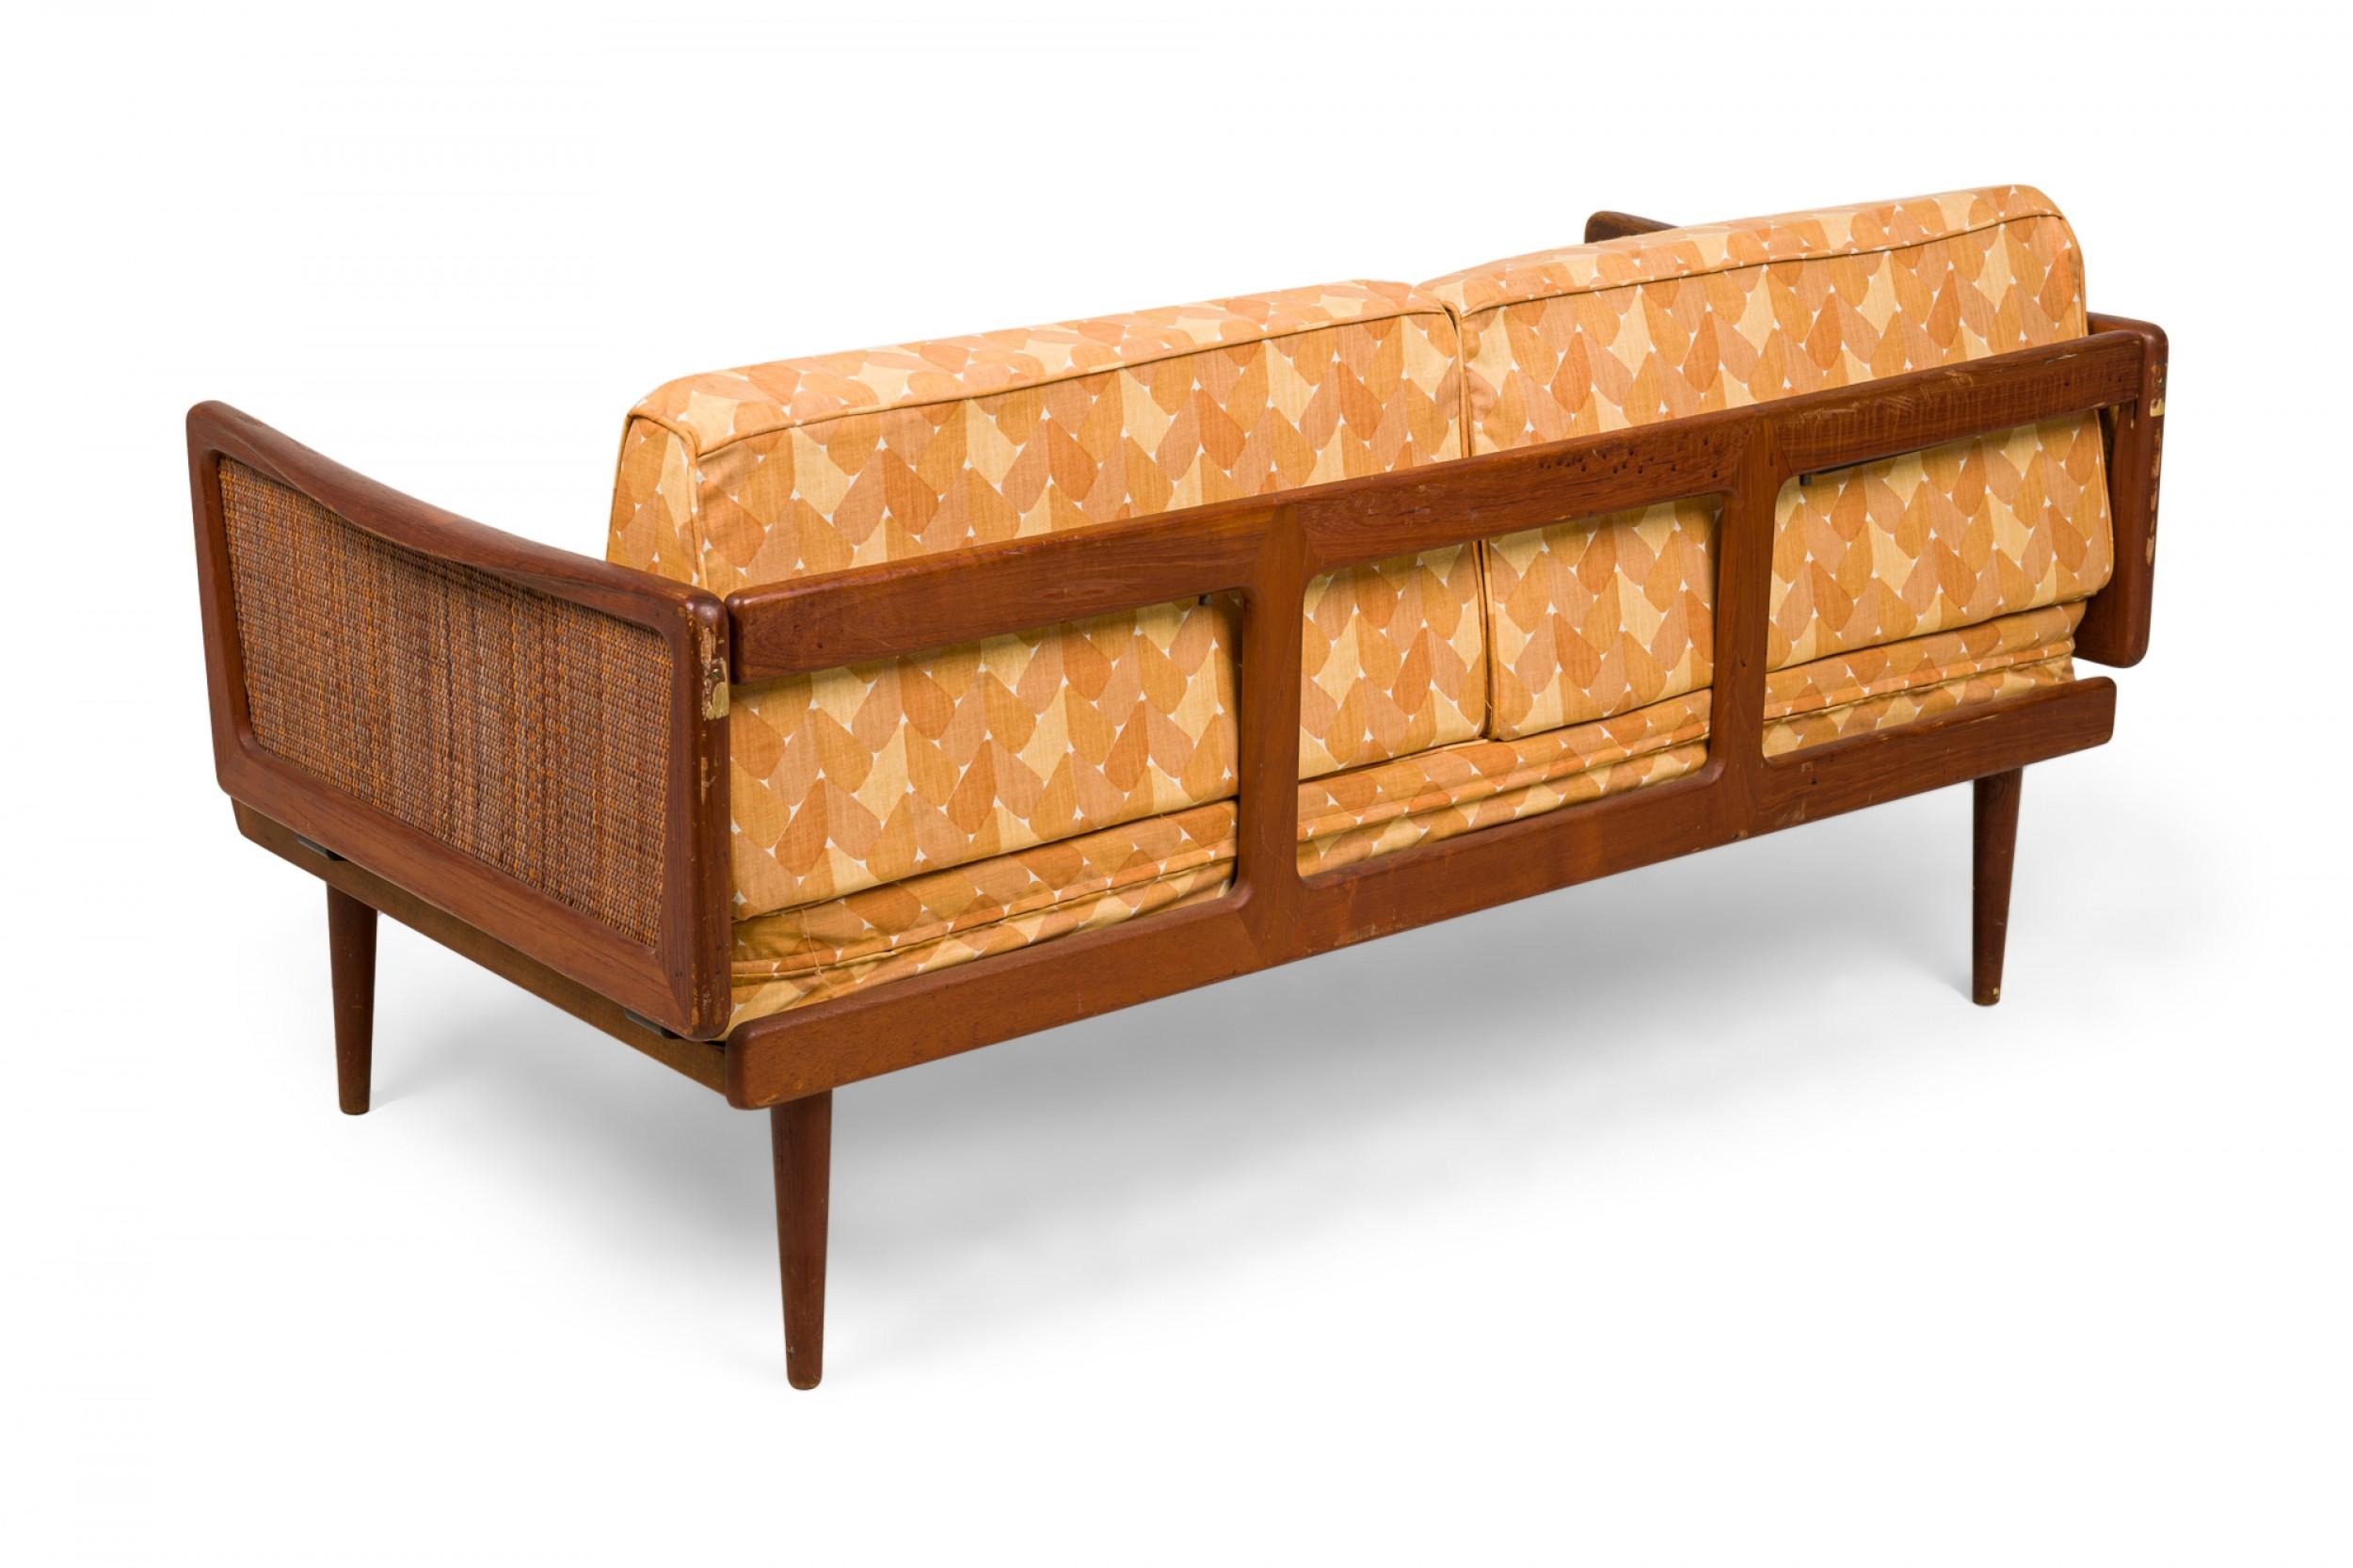 Danois Peter Hvidt - Canapé-lit danois à structure en bois, à cannelures et à motifs dorés, rembourré en vente